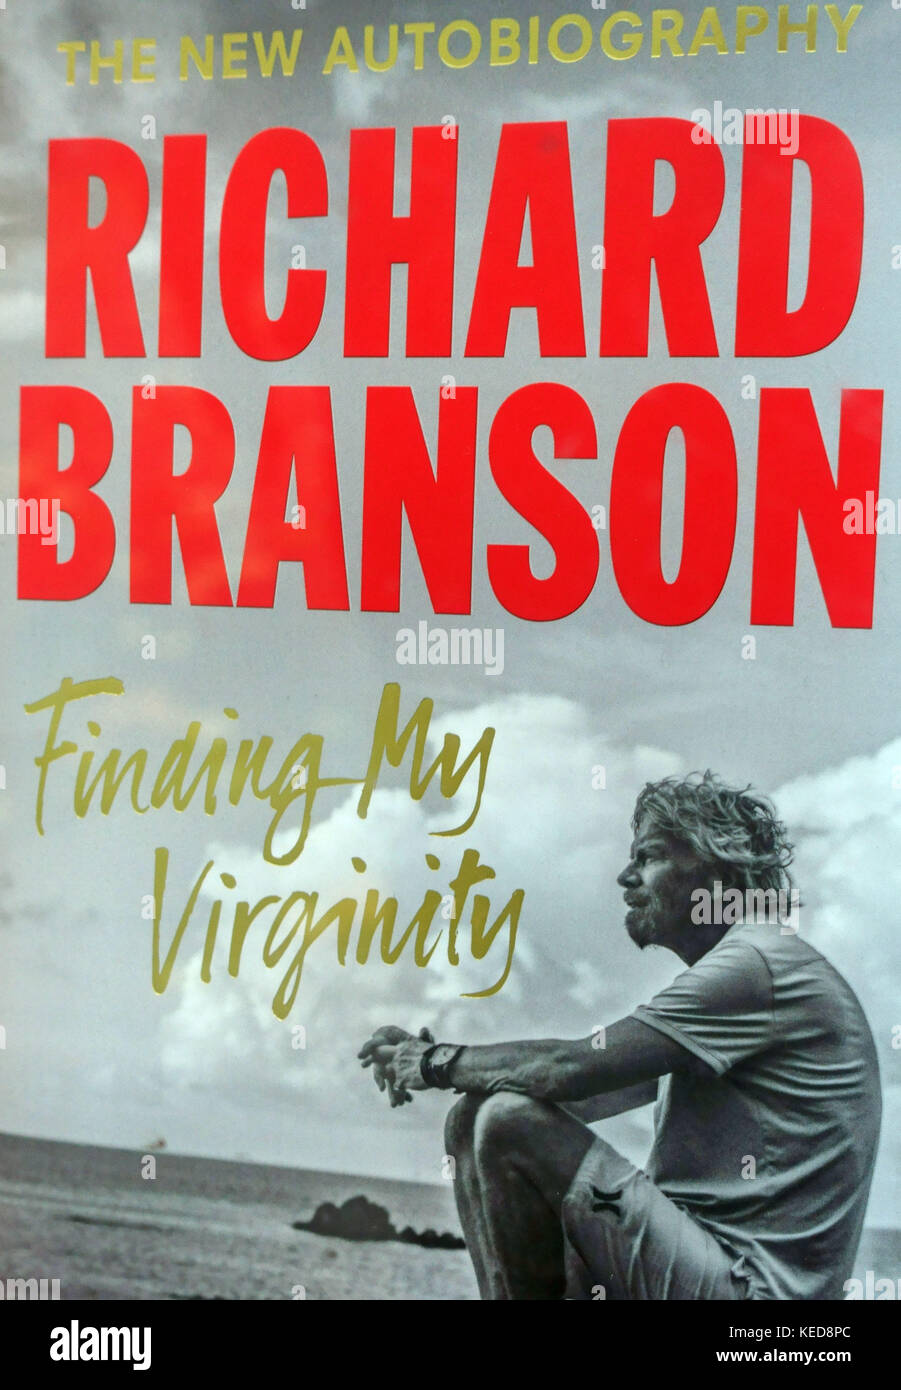 'Trouver ma virginité', nouvelle autobiographie de l'homme d'affaires Richard Branson, Londres Banque D'Images